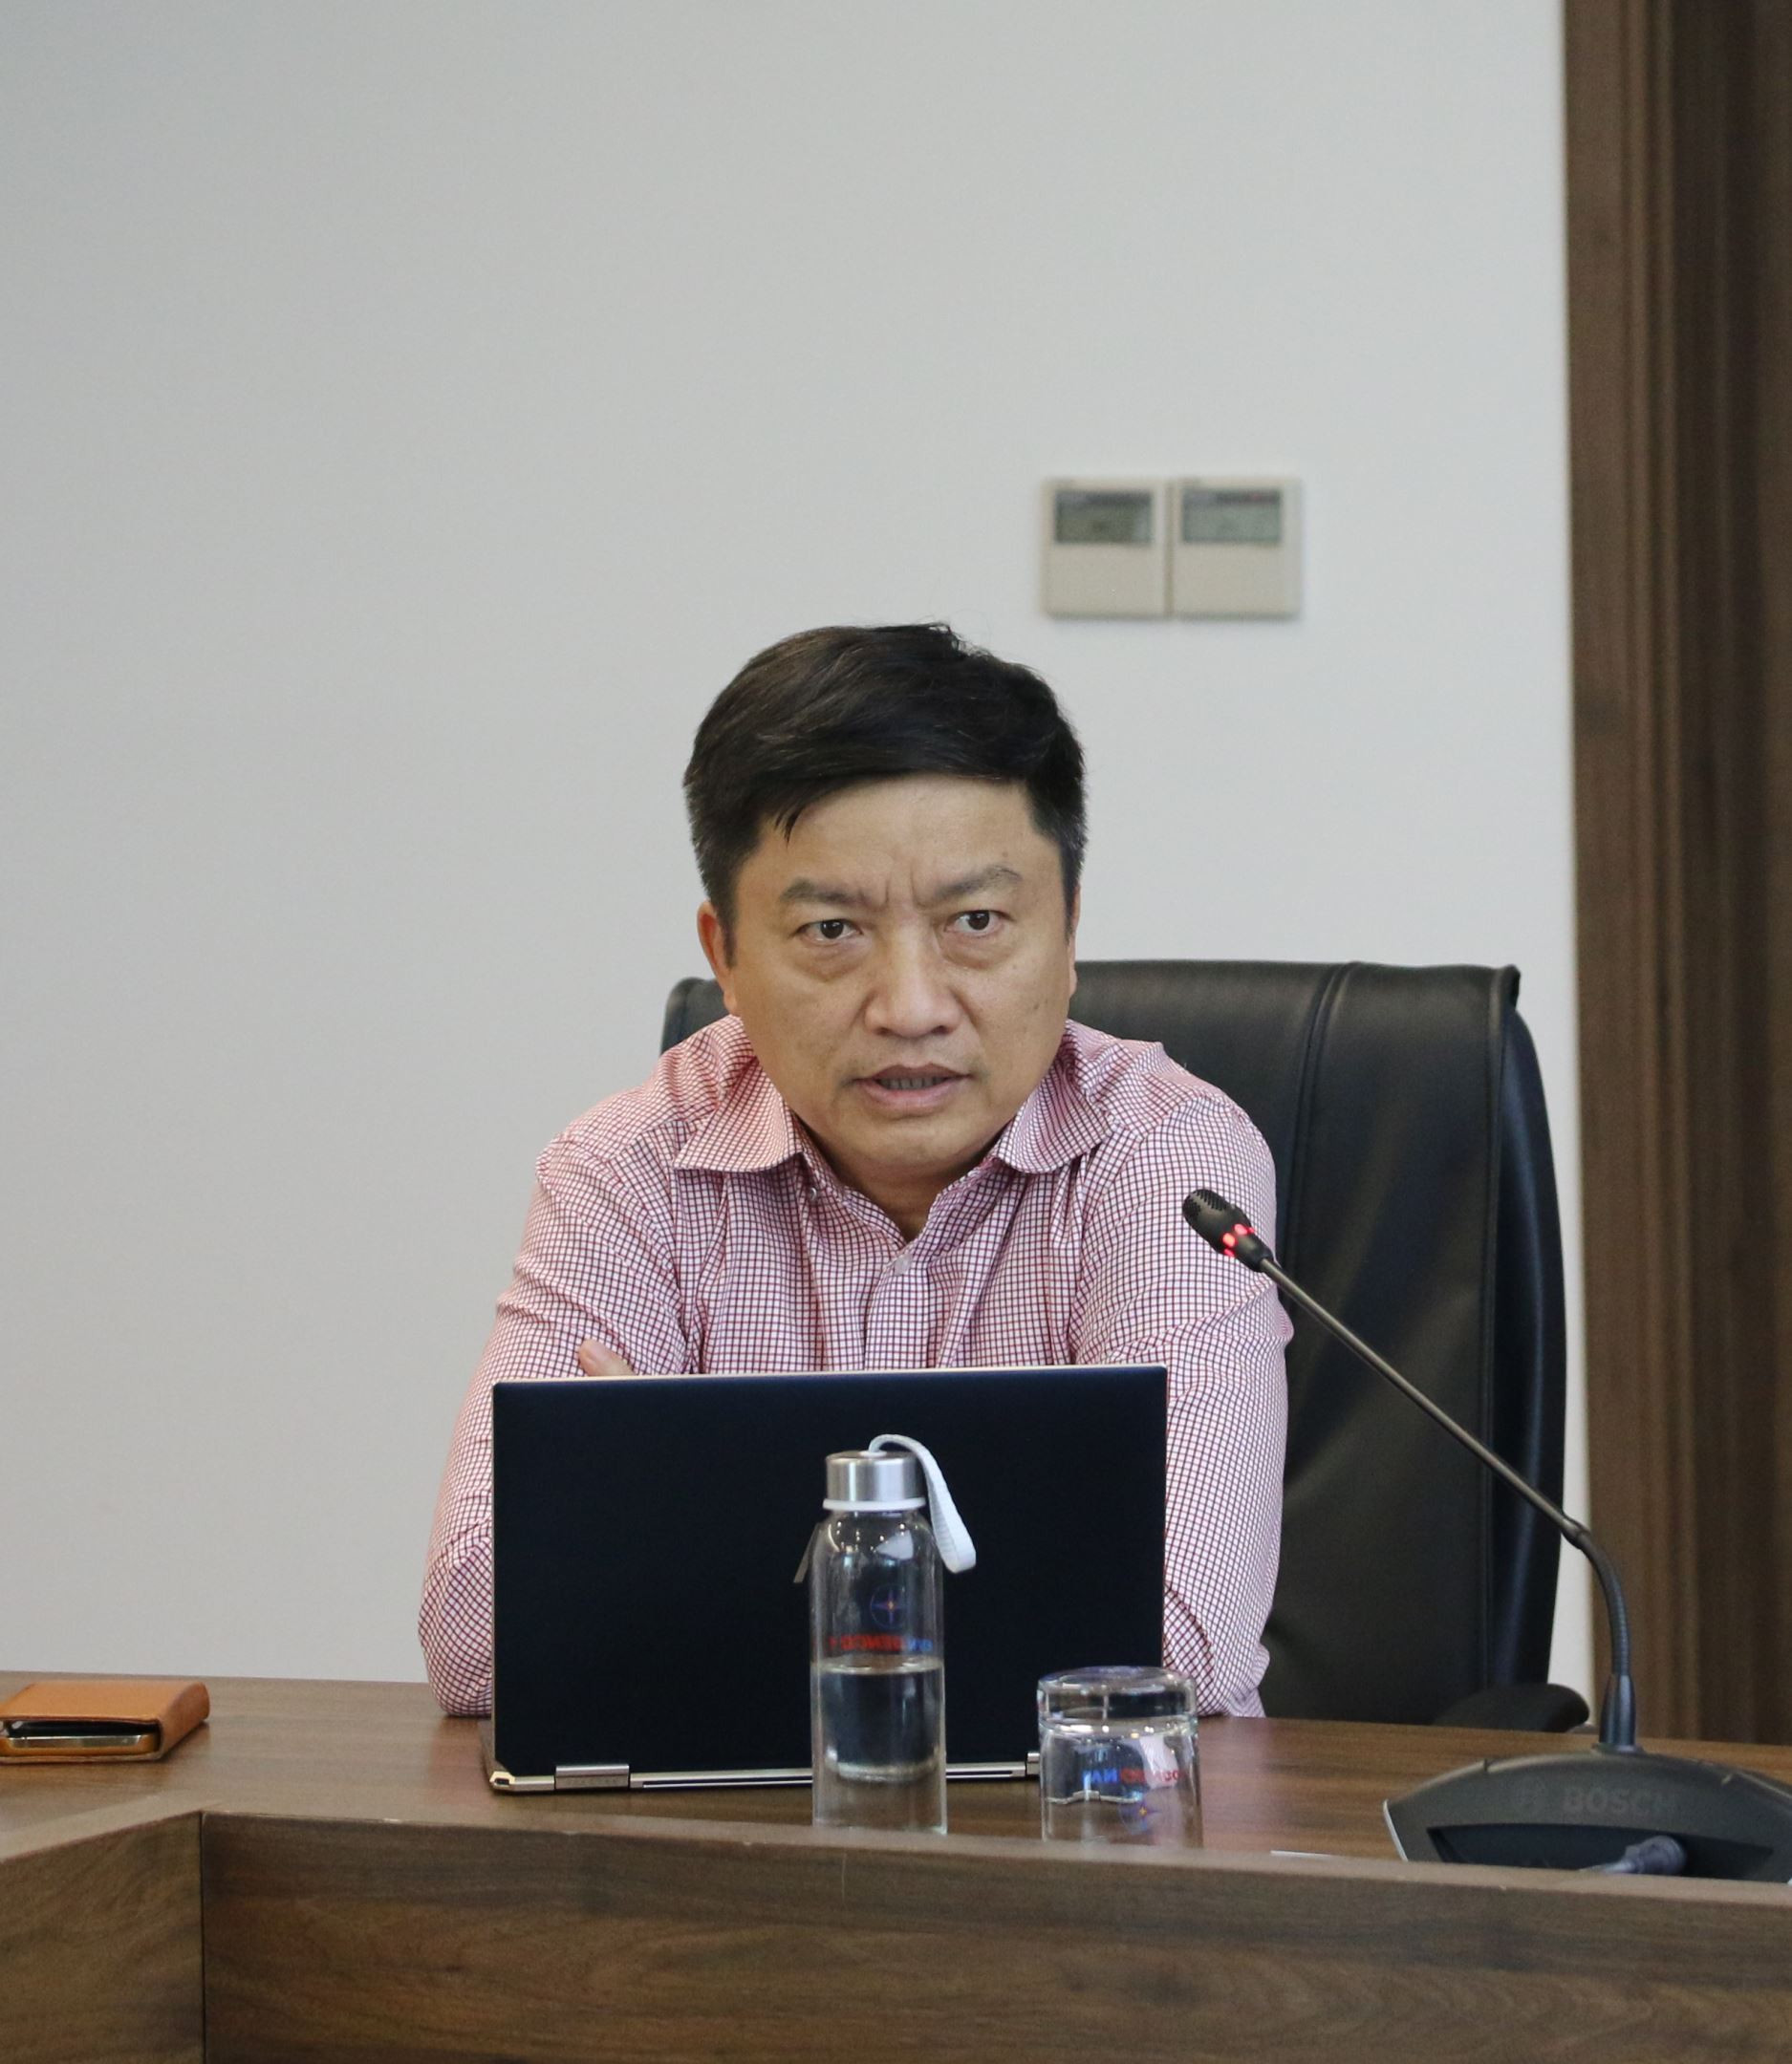 Ông Nguyễn Tiến Khoa - Chủ tịch HĐTV EVNGENCO1 chỉ đạo những nhiệm vụ trọng tâm cần hoàn thành trong tháng cuối năm 2021.